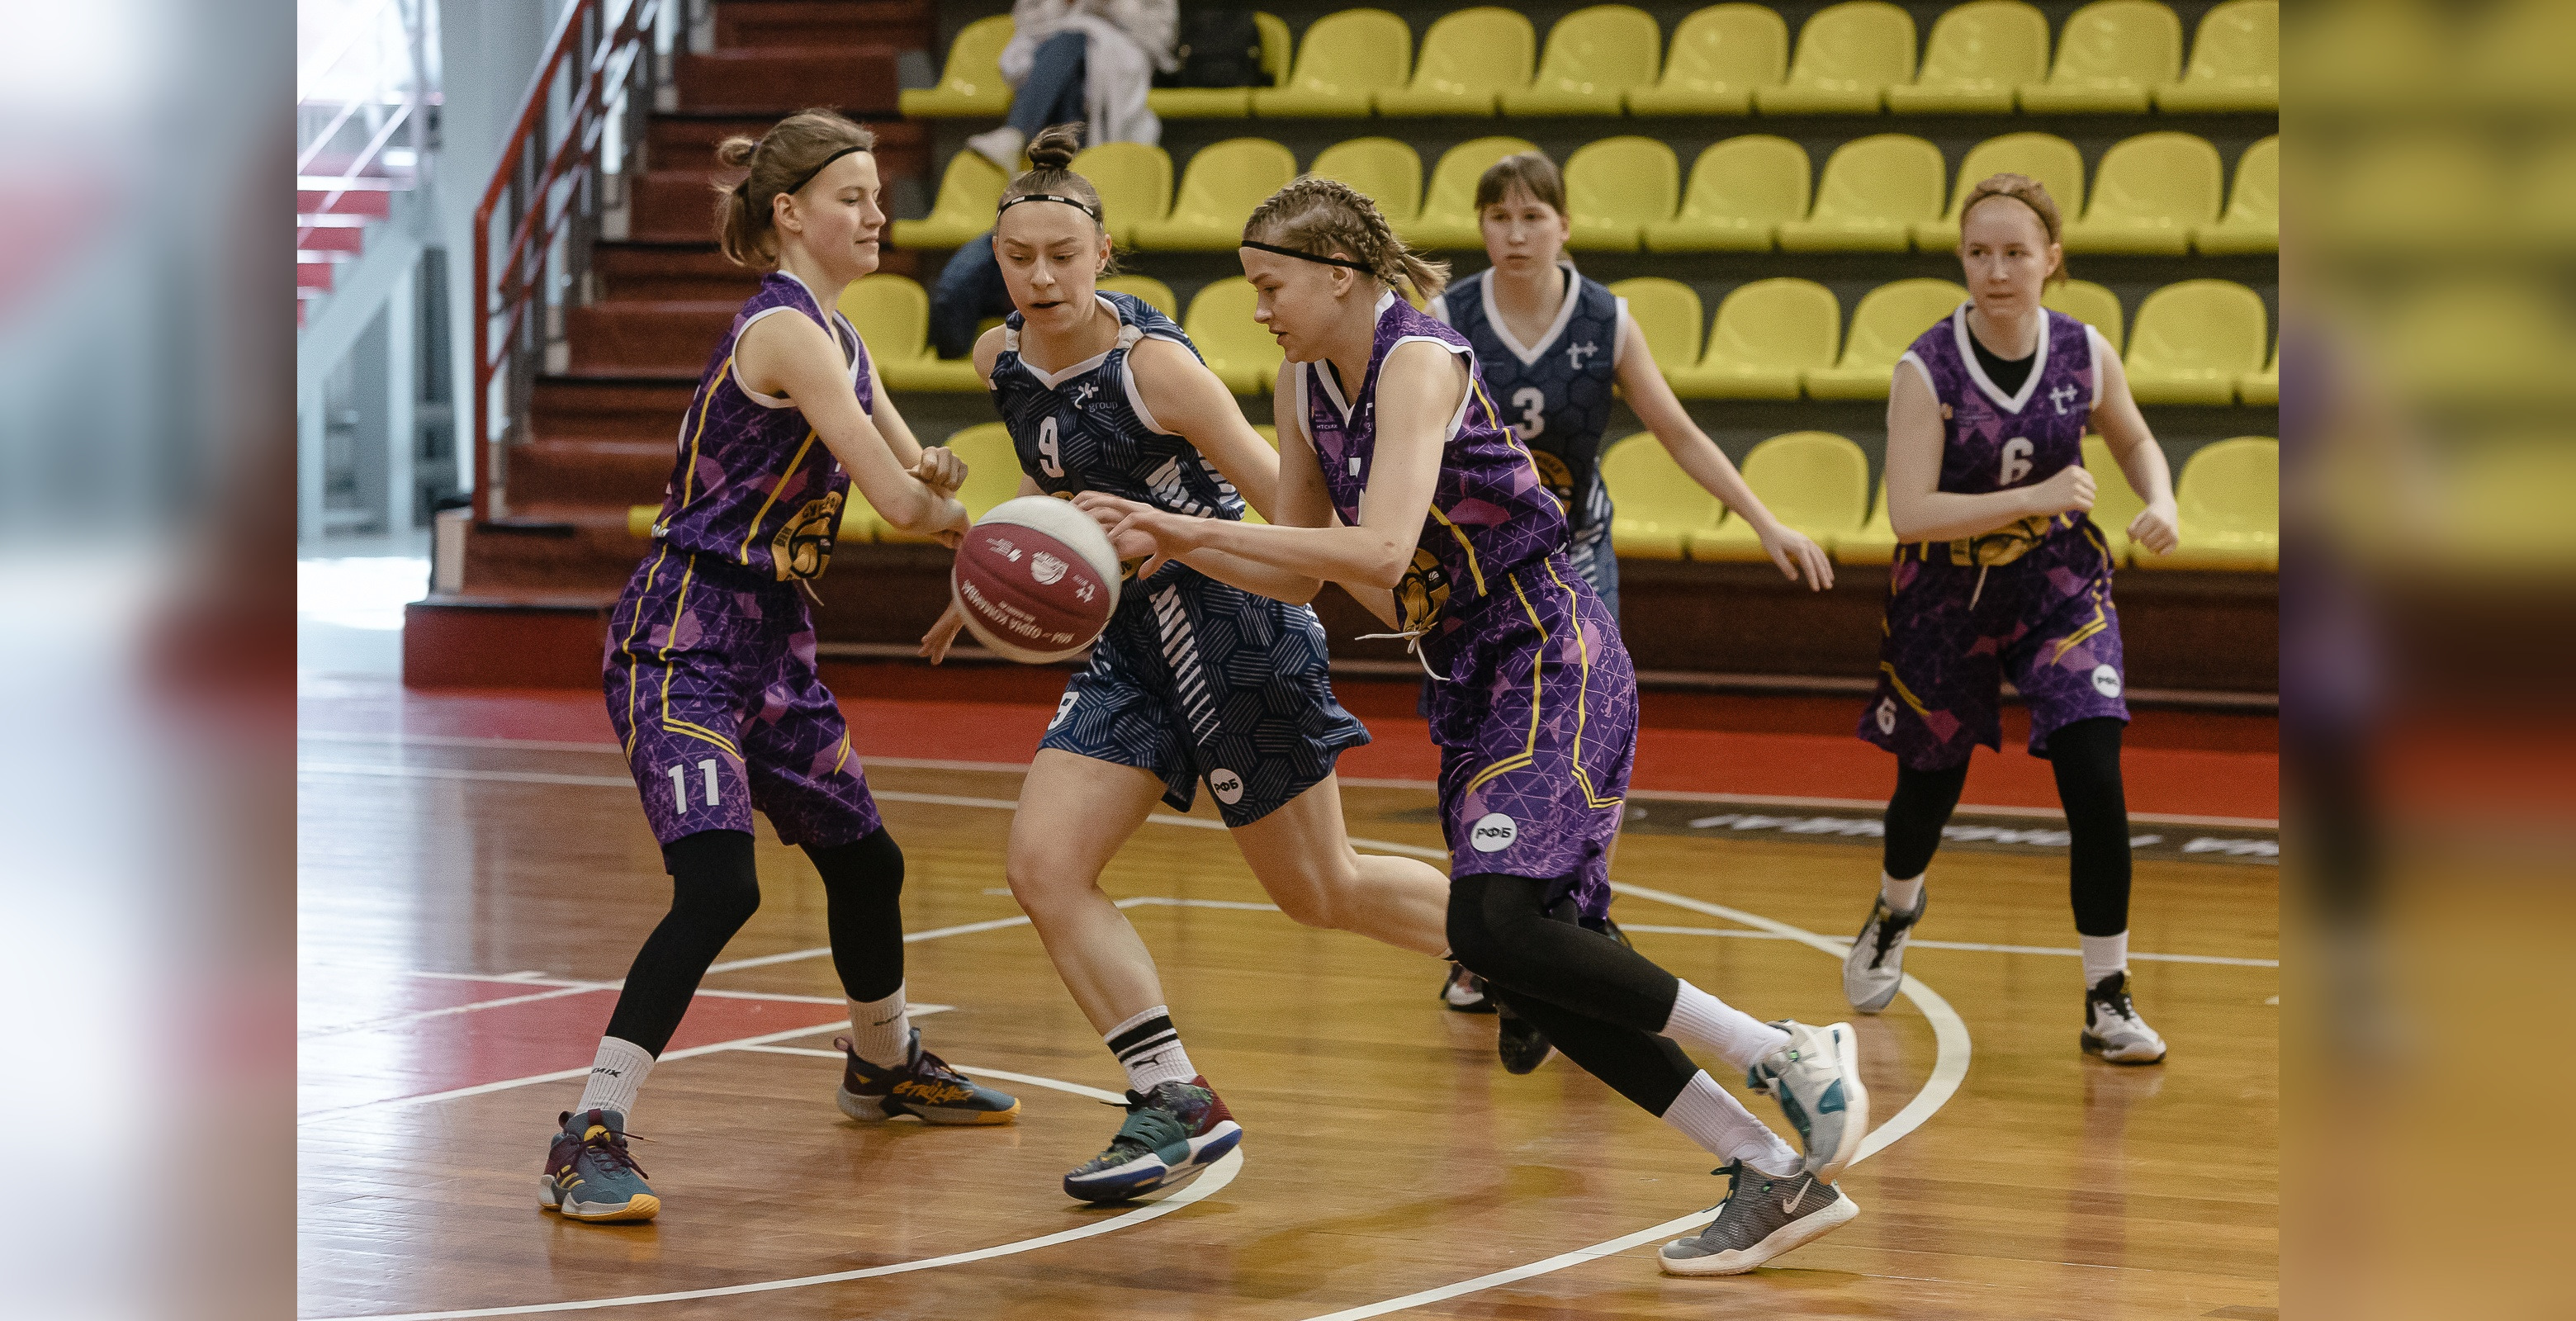 Команда баскетболисток из Вахрушей Слободского района вышла в полуфинал Чемпионата ШБЛ 